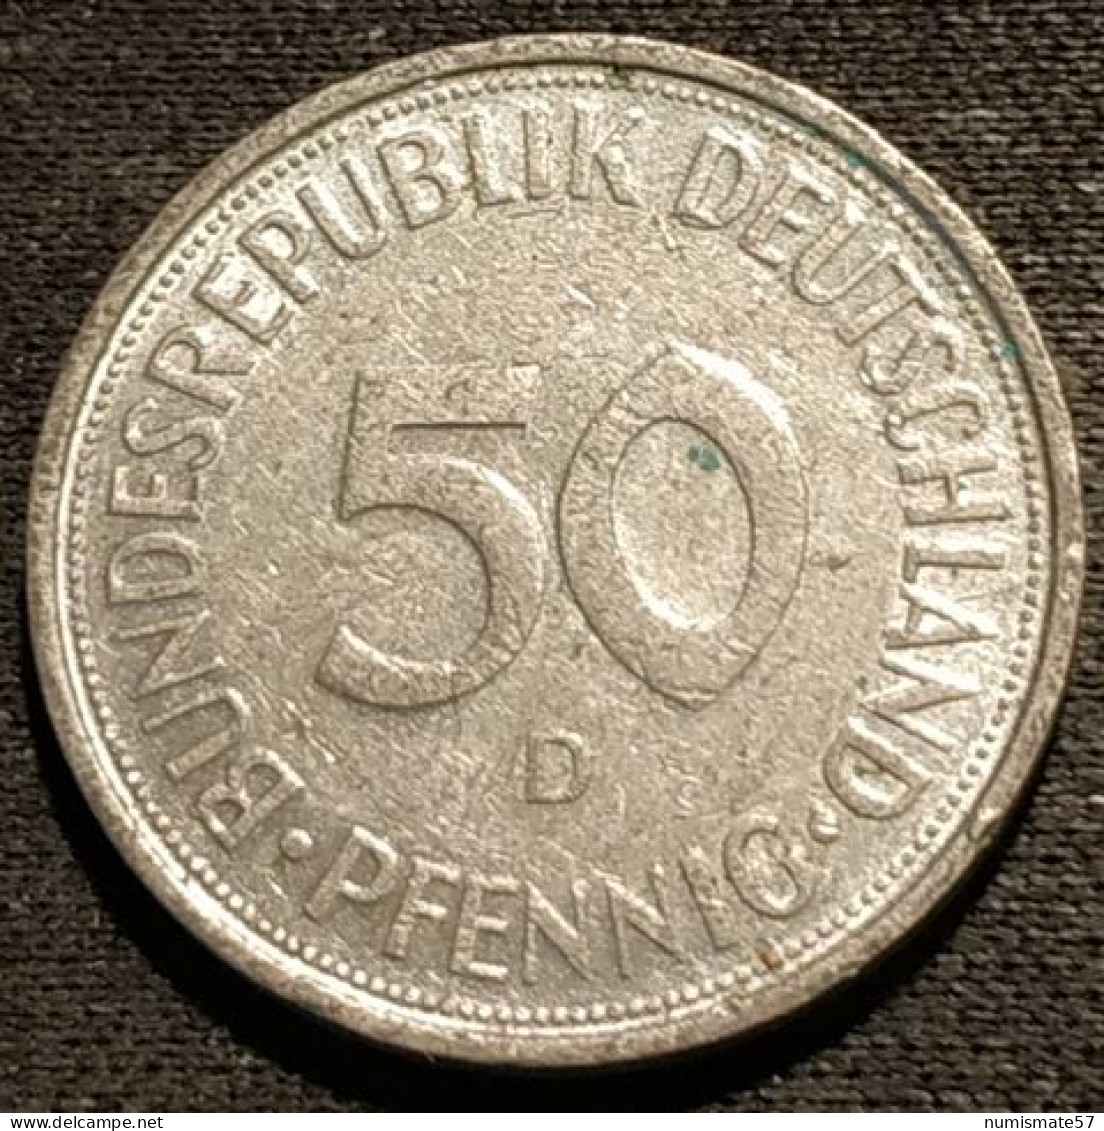 ALLEMAGNE - GERMANY - 50 PFENNIG 1973 D - Bundesrepublik Deutschland - KM 109.2 - (tranche Lisse) - 50 Pfennig